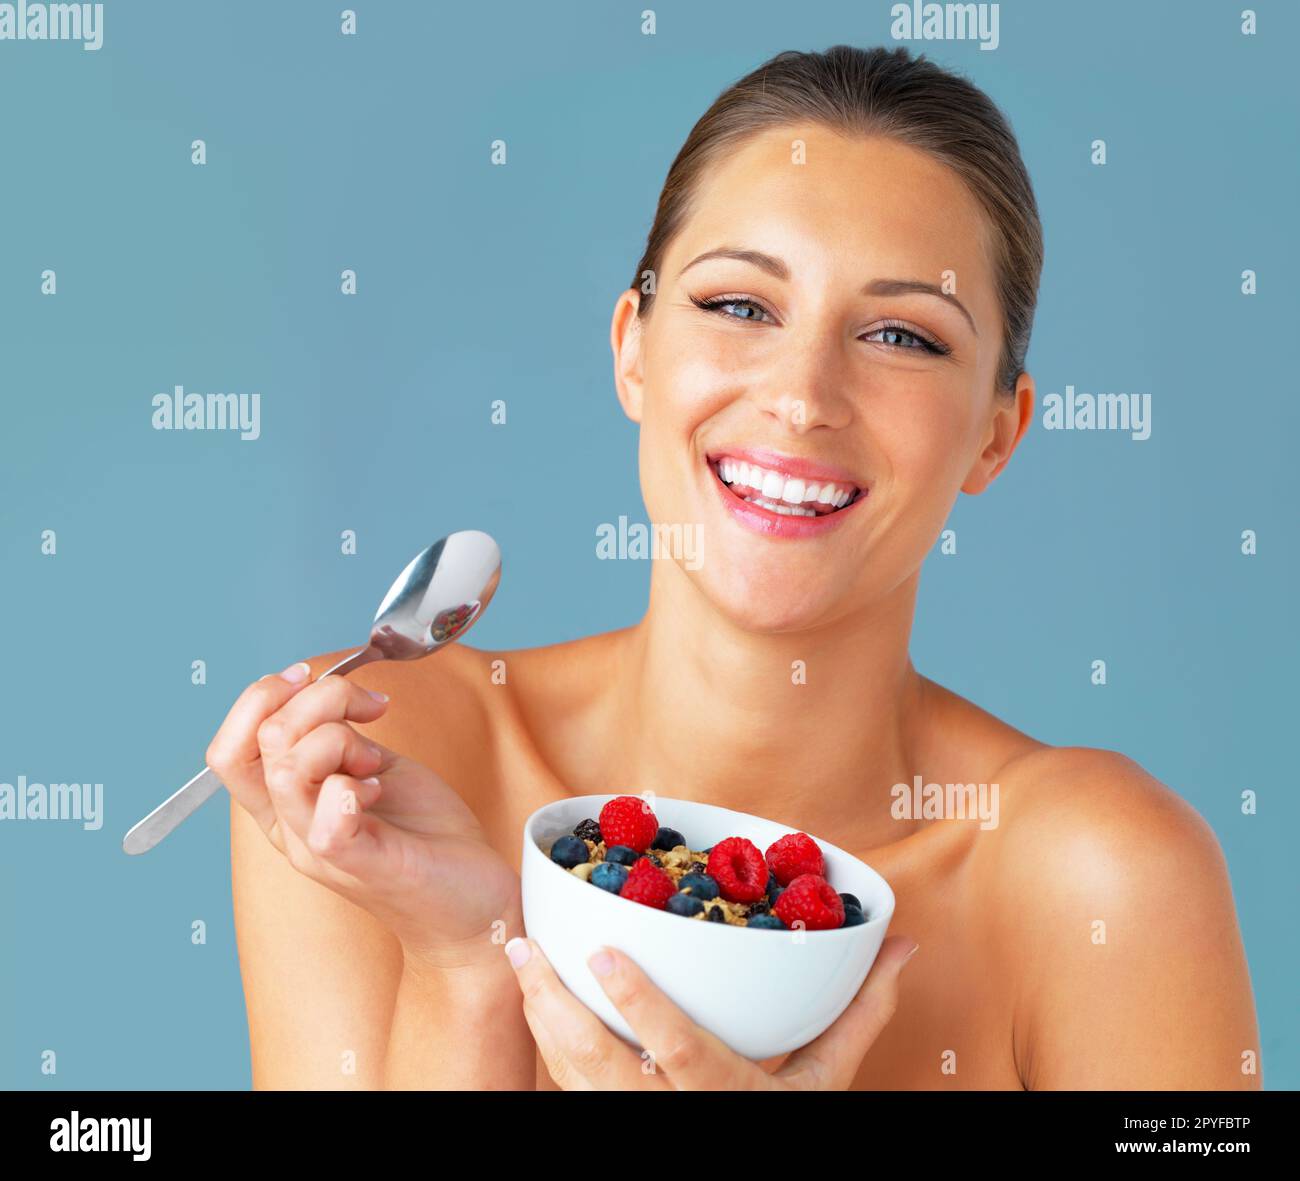 Mangez sainement, soyez heureux. Studio photo d'une jeune femme attrayante mangeant un bol de muesli et de fruits sur fond bleu. Banque D'Images